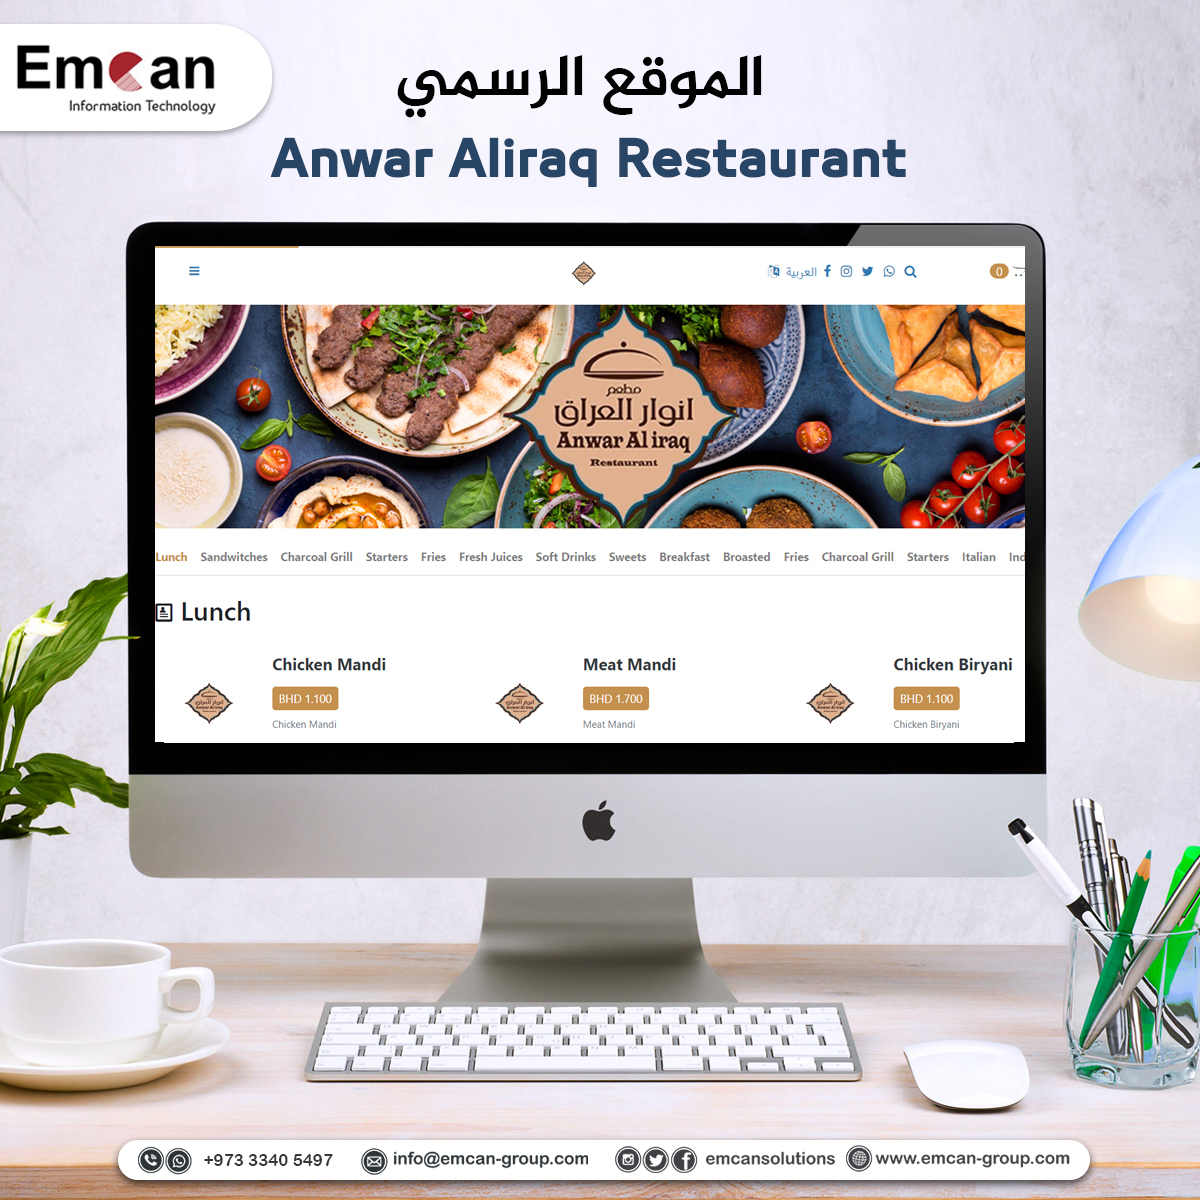 Anwar Al iraq Restaurant website